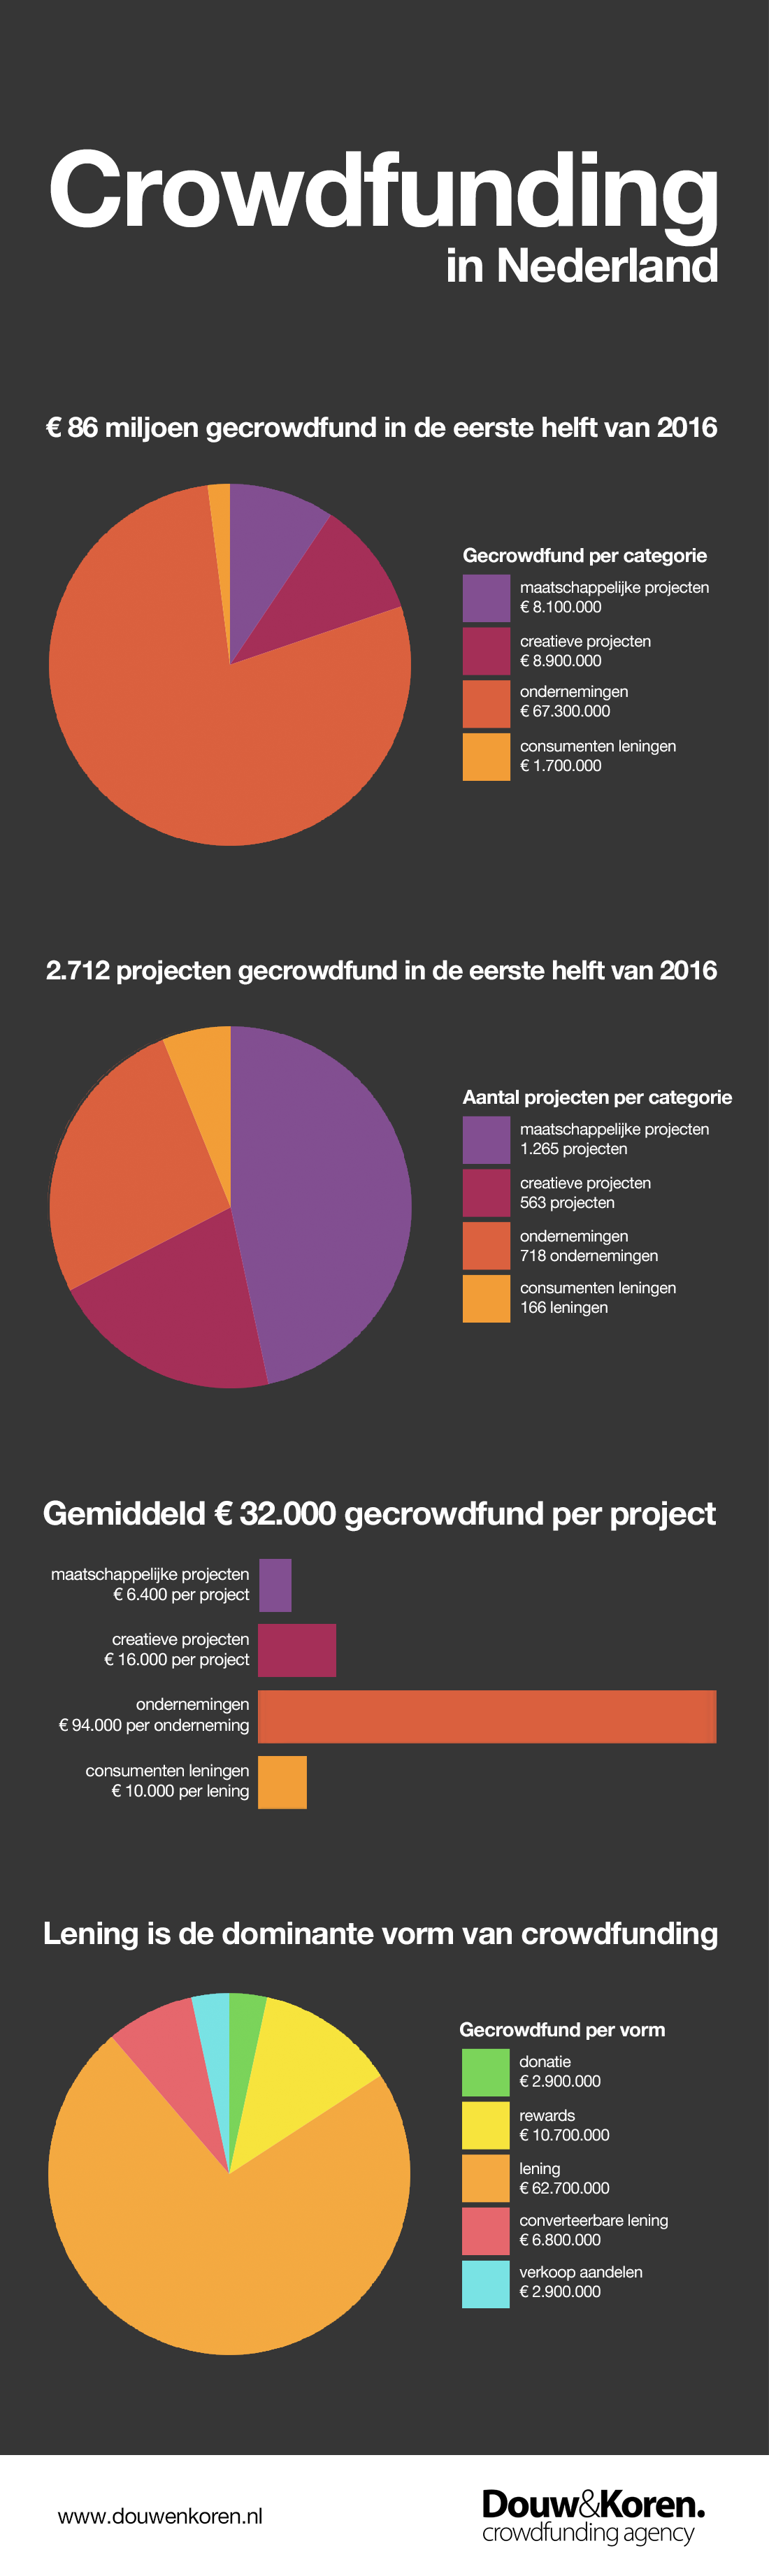 D&K - Crowdfunding in Nederland - eerste helft 2016